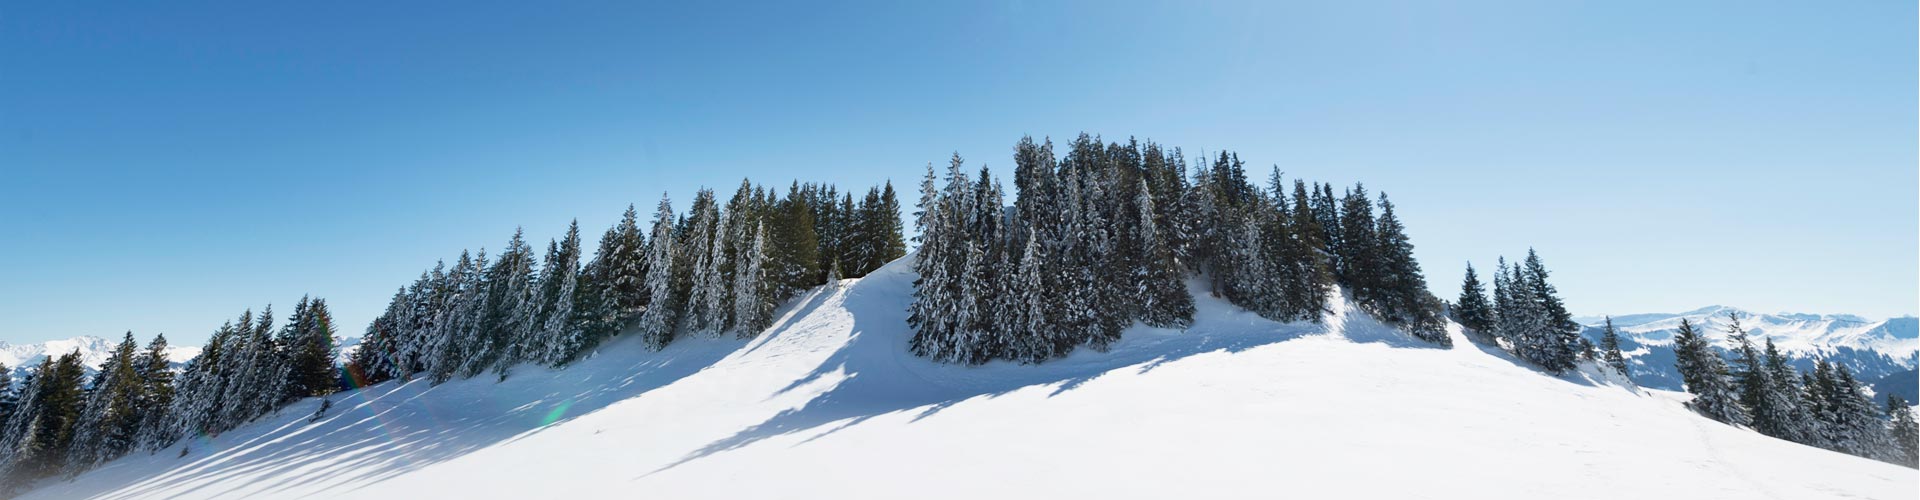 Winteraktivitäten im Allgäu wie Skifahren, Schneeschuhwandern, Skitouren, Langlaufen